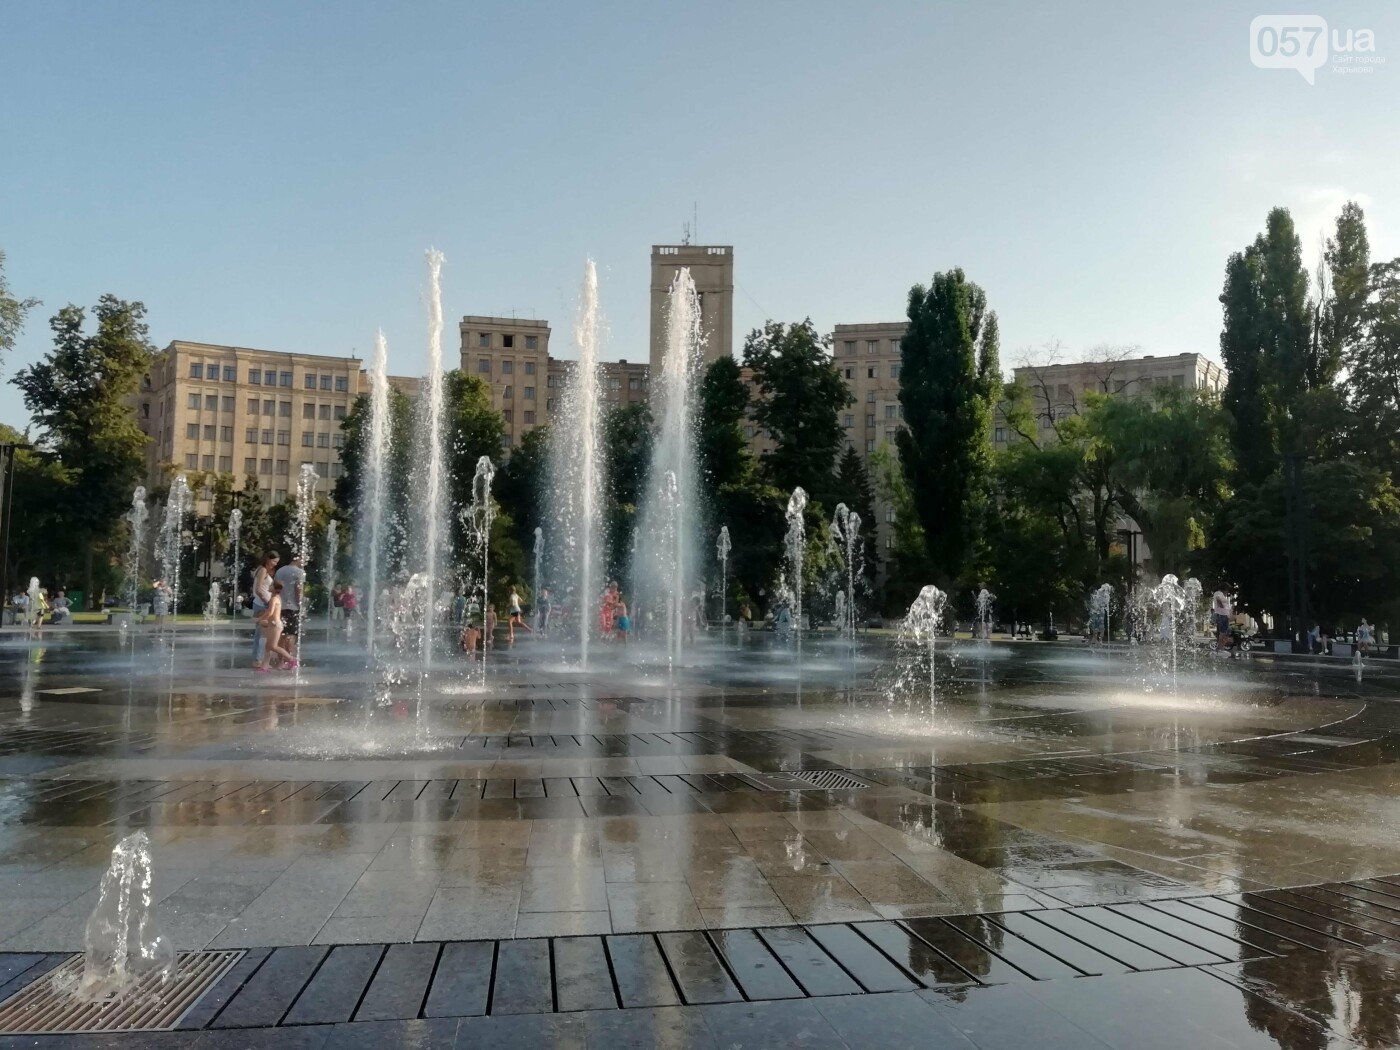 ТОП-10 локаций в центре Харькова для летних фотосессий, - ФОТО, фото-1